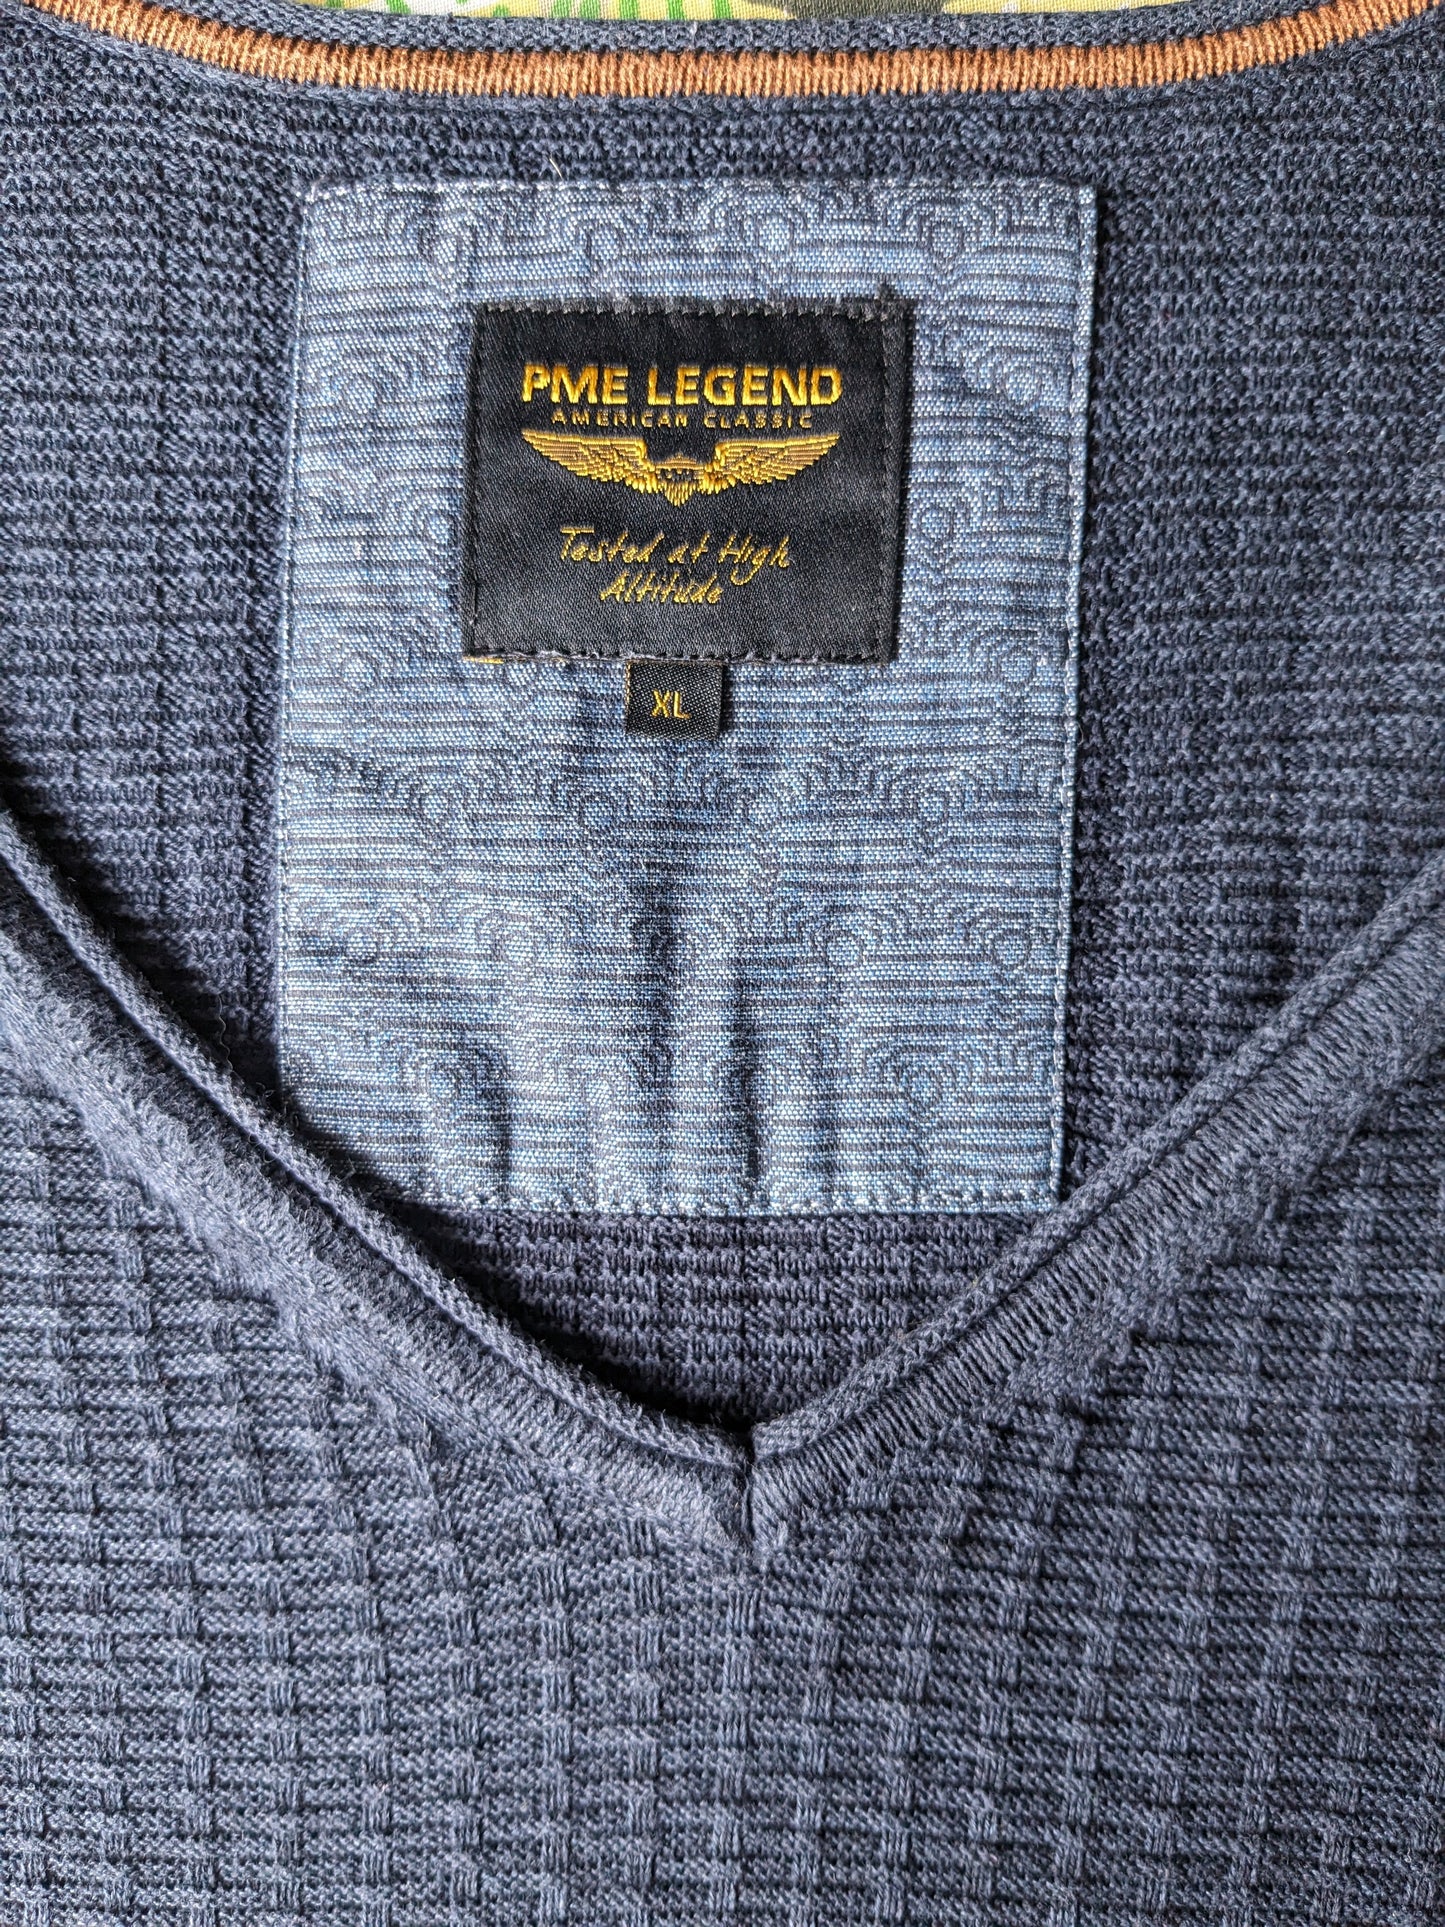 Jersey PME Legend con cuello en pico. Motivo táctil azul oscuro. Talla XL.